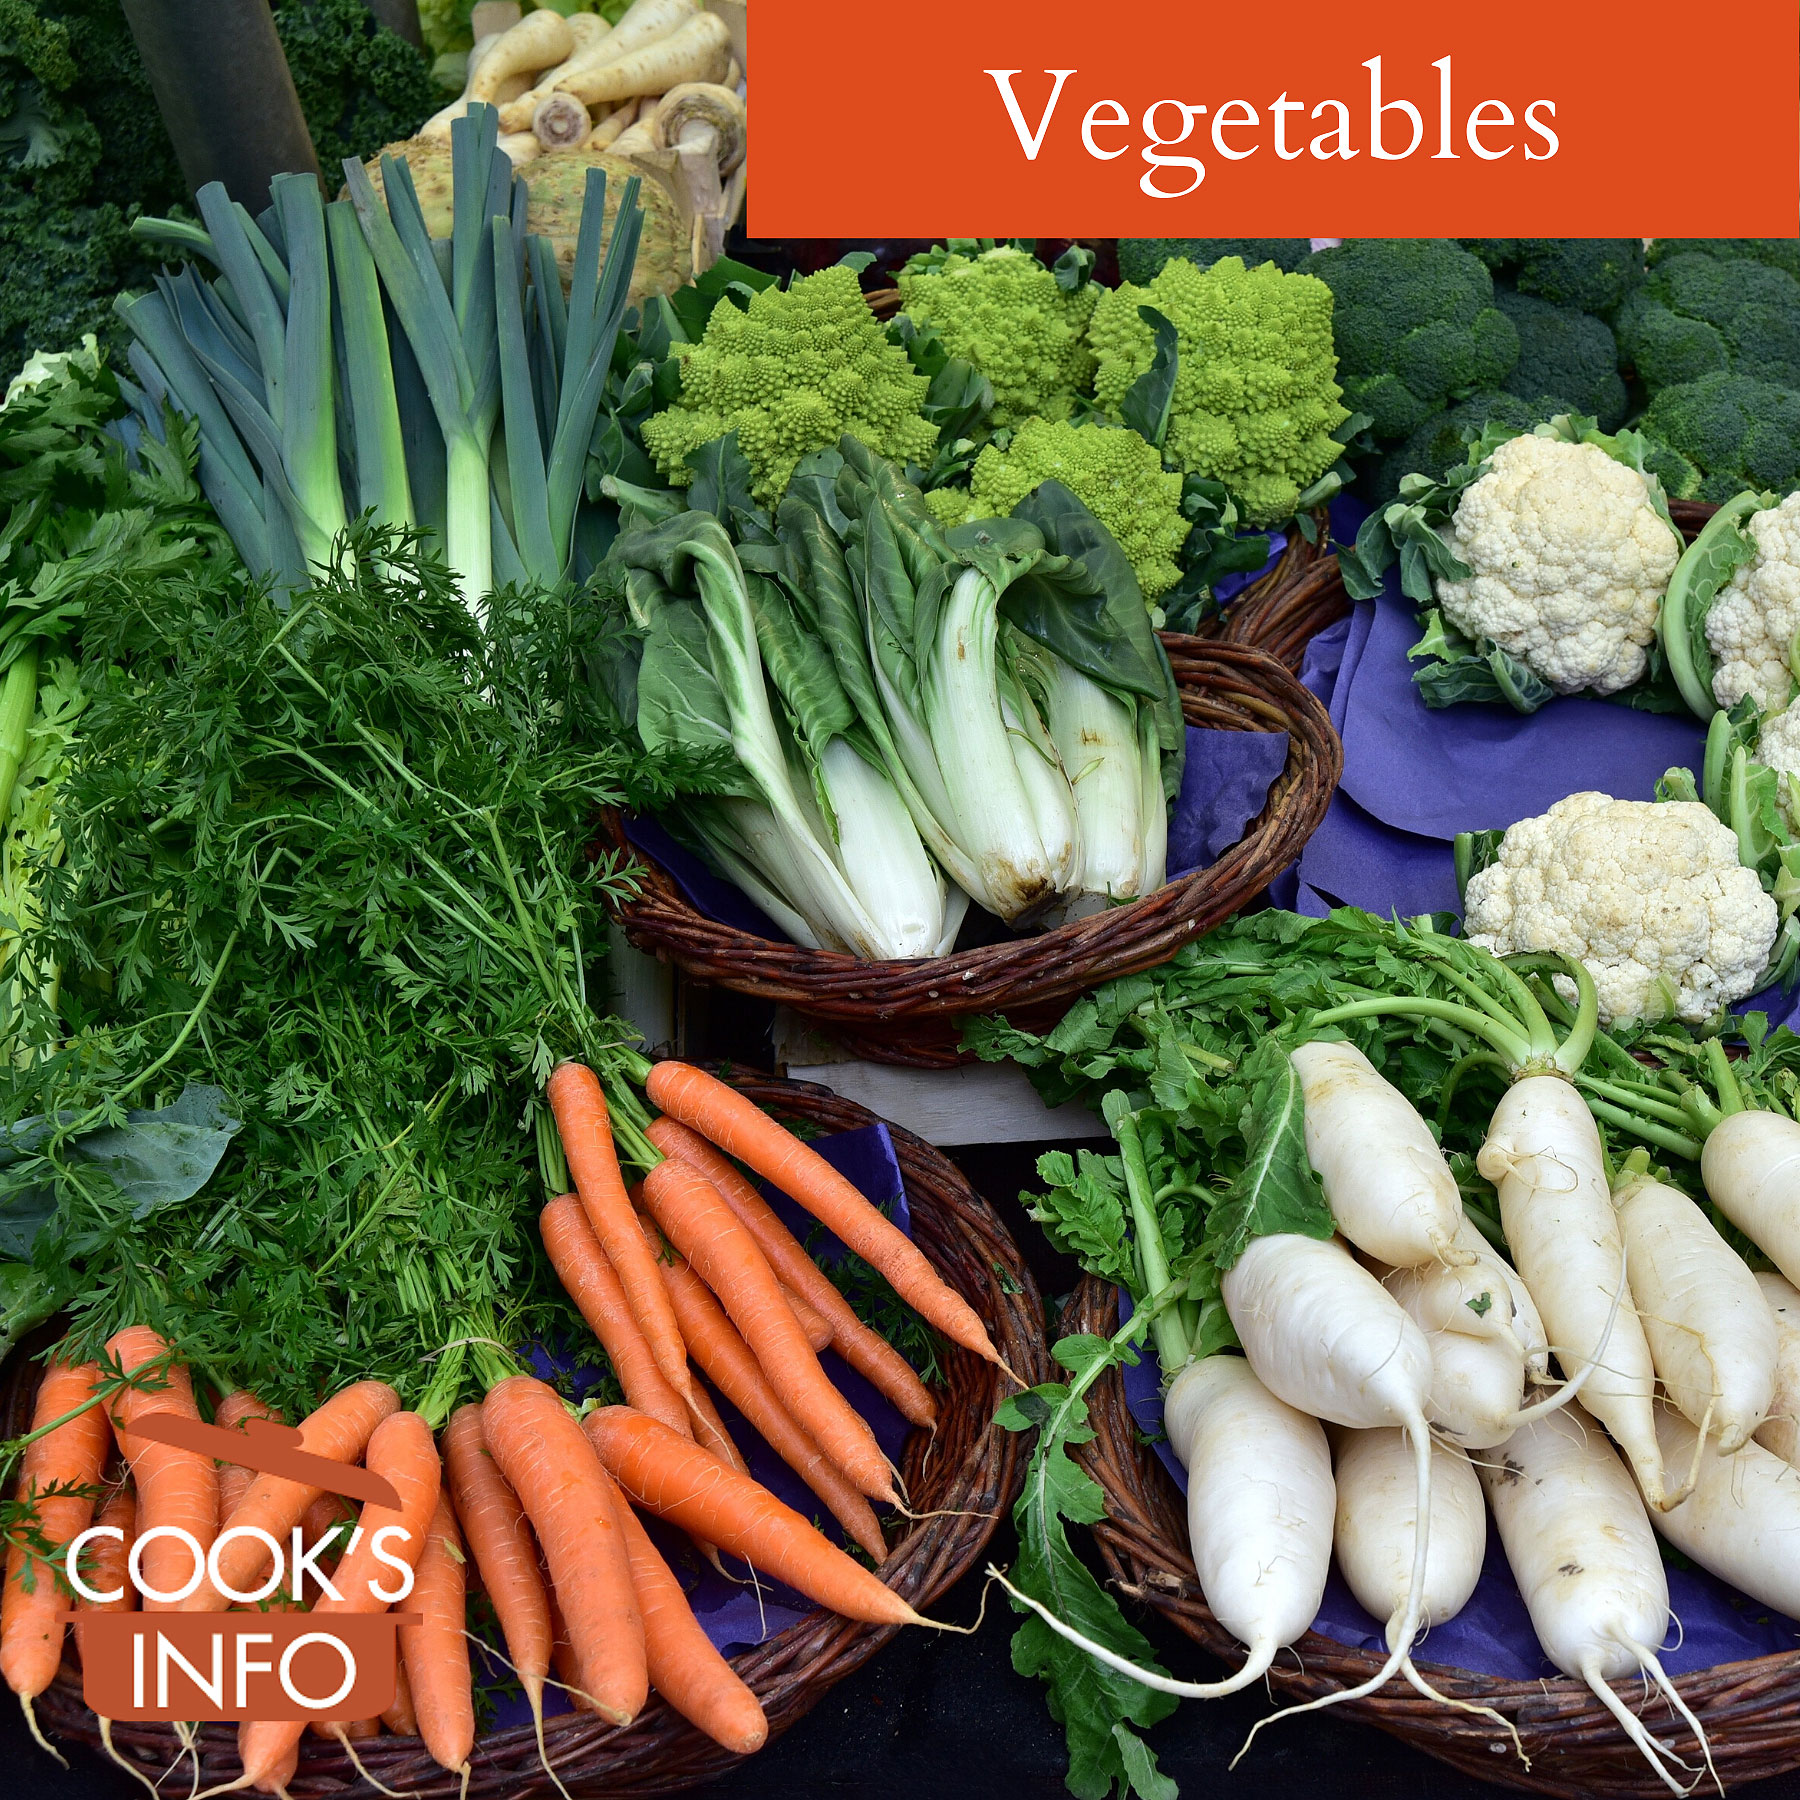 Vegetables at market